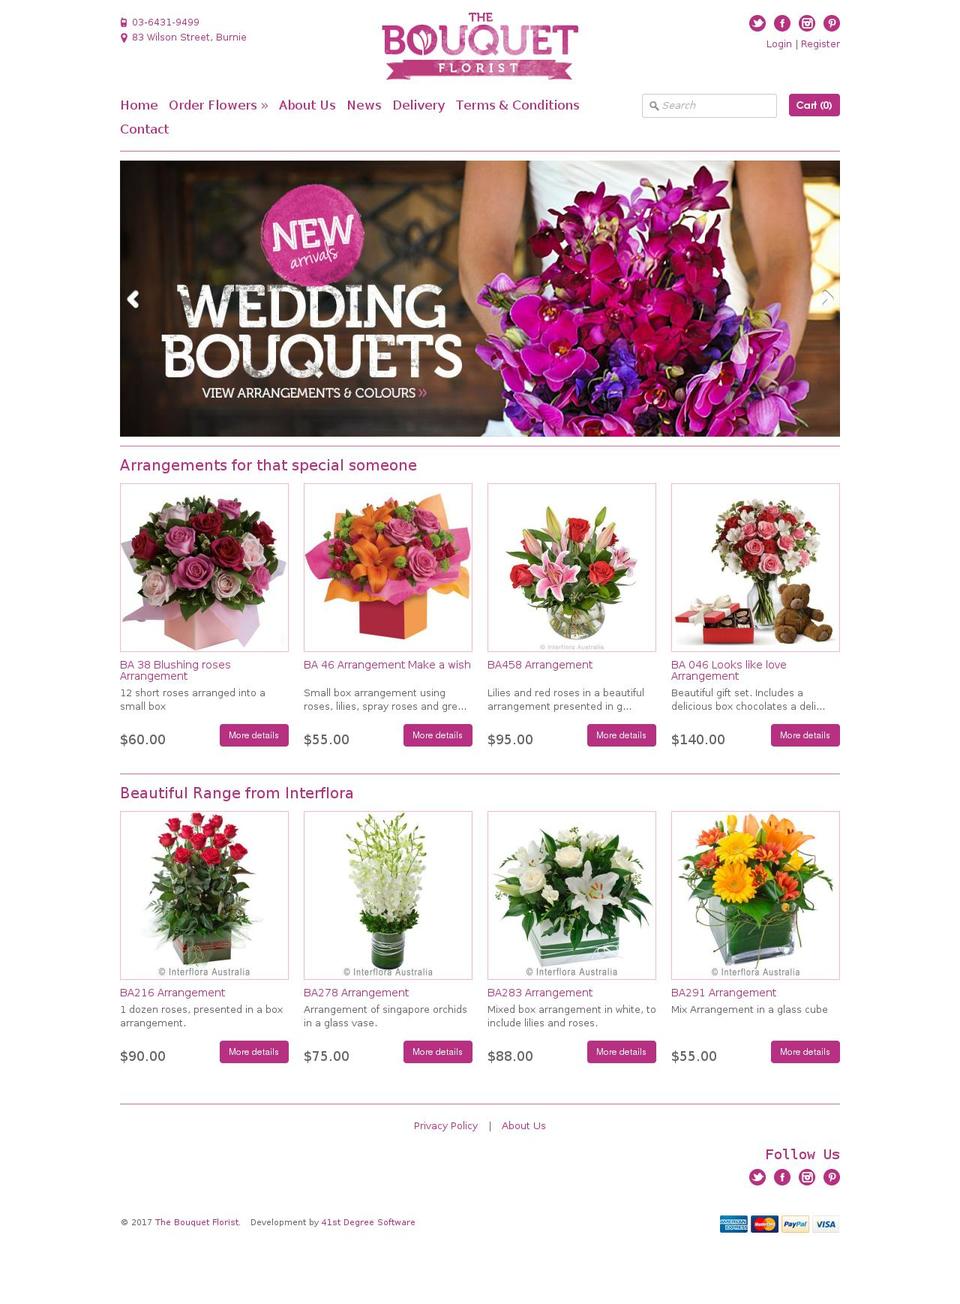 Expression Shopify theme site example bouquetflorist.com.au